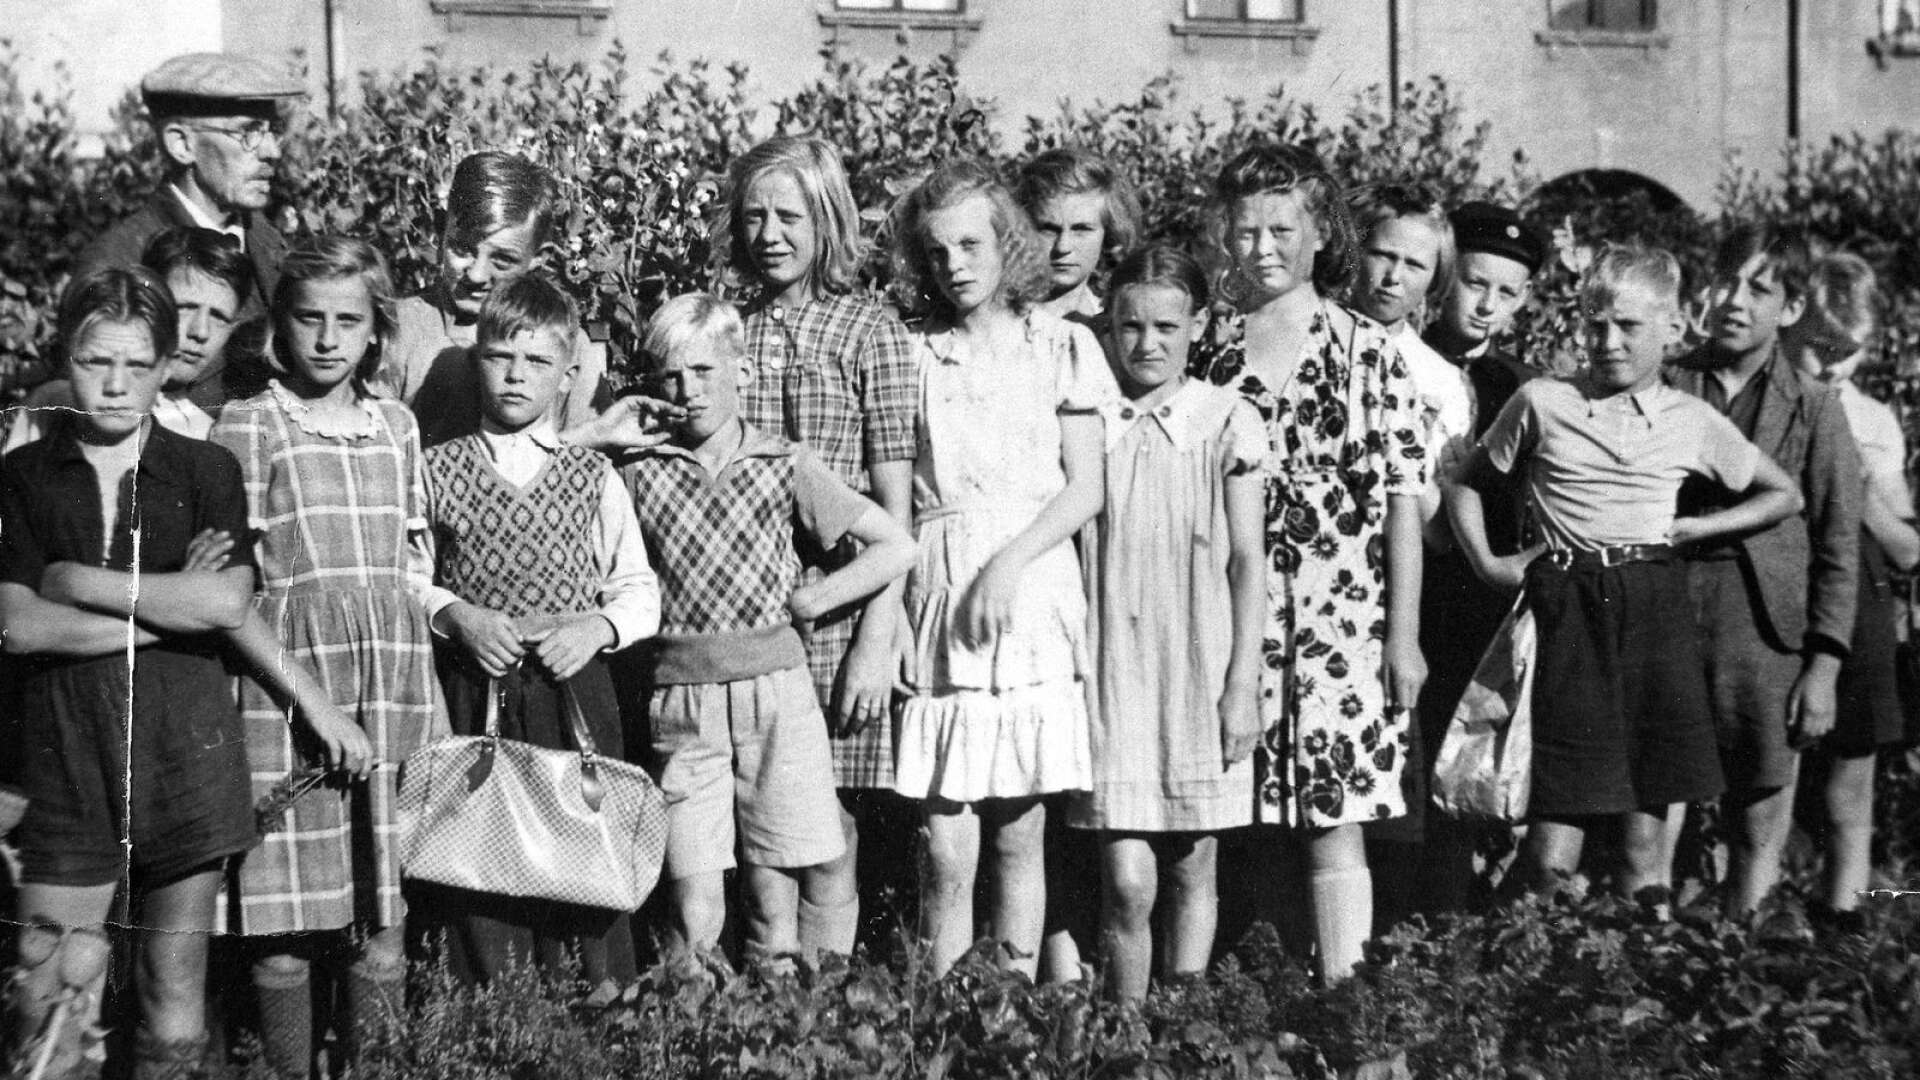 Juni är här och sommarlovet har börjat för Karlstads elever. Vi passar därför på att titta tillbaka till år 1942 när Herrhagsskolan släppte ut sina elever efter ett läsår. Här syns lärare E.S Strandman med sin klass.